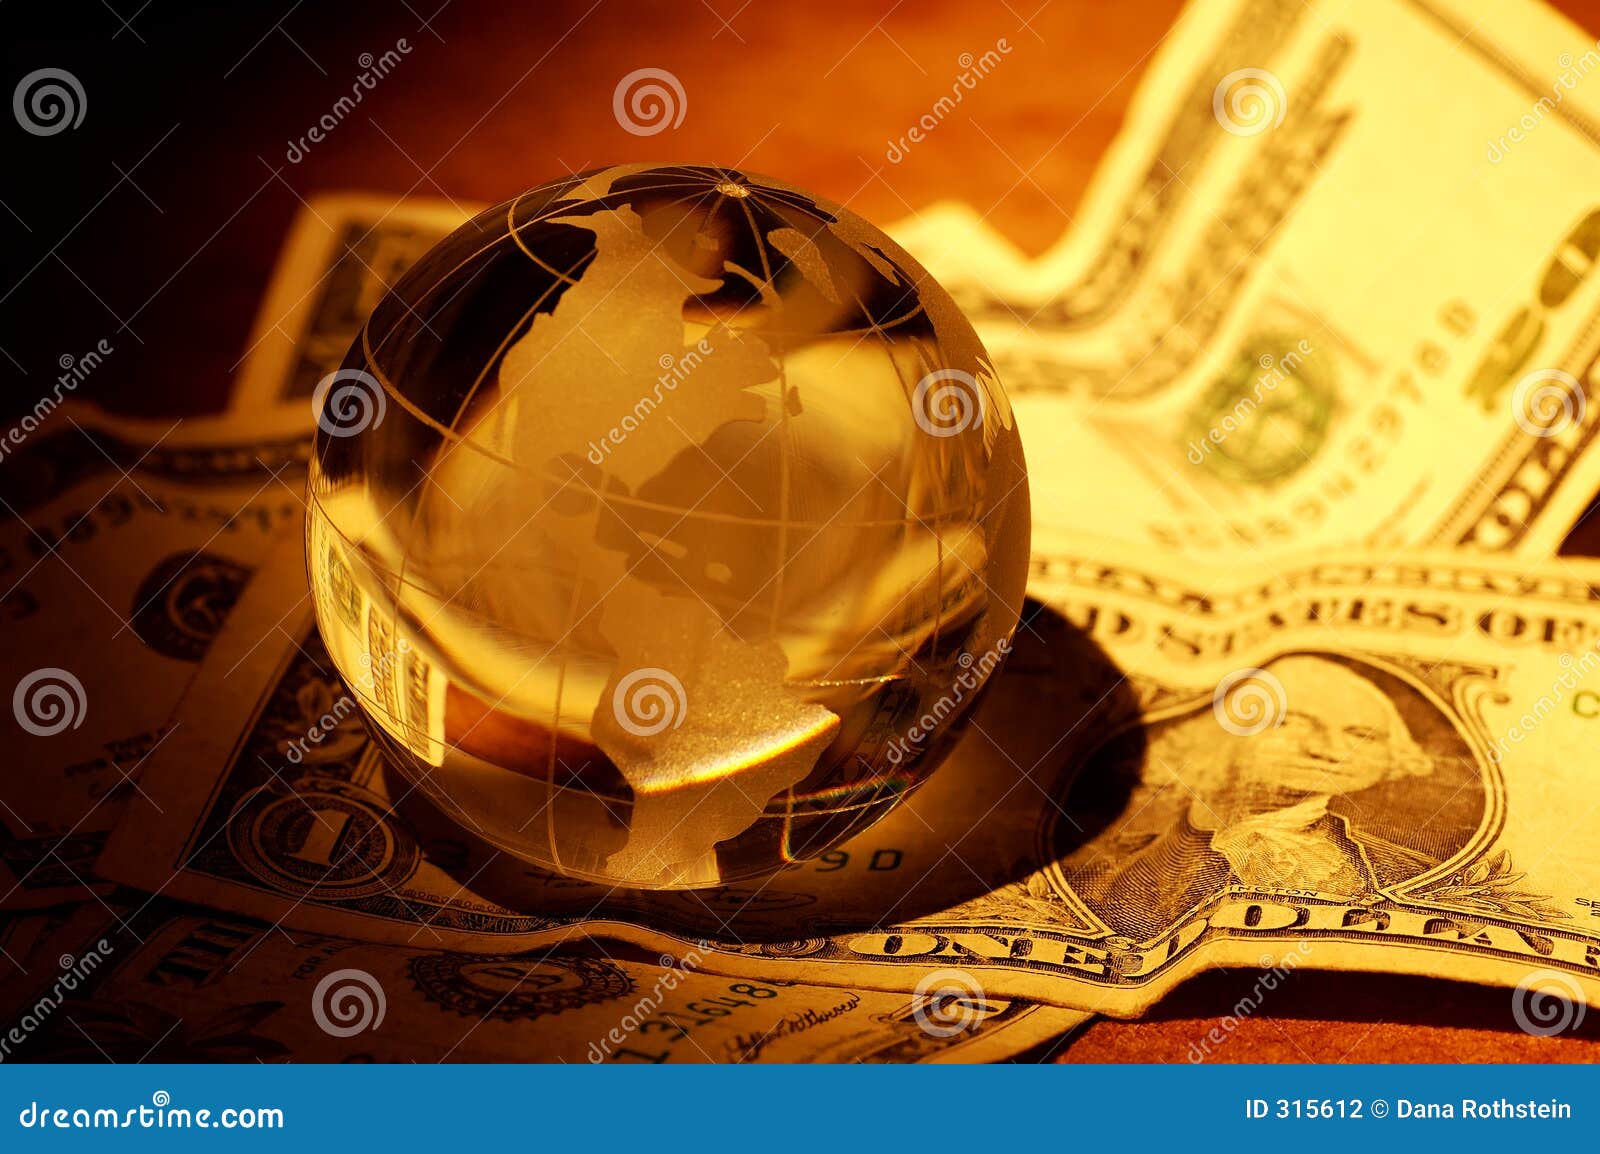 global-finance-315612.jpg